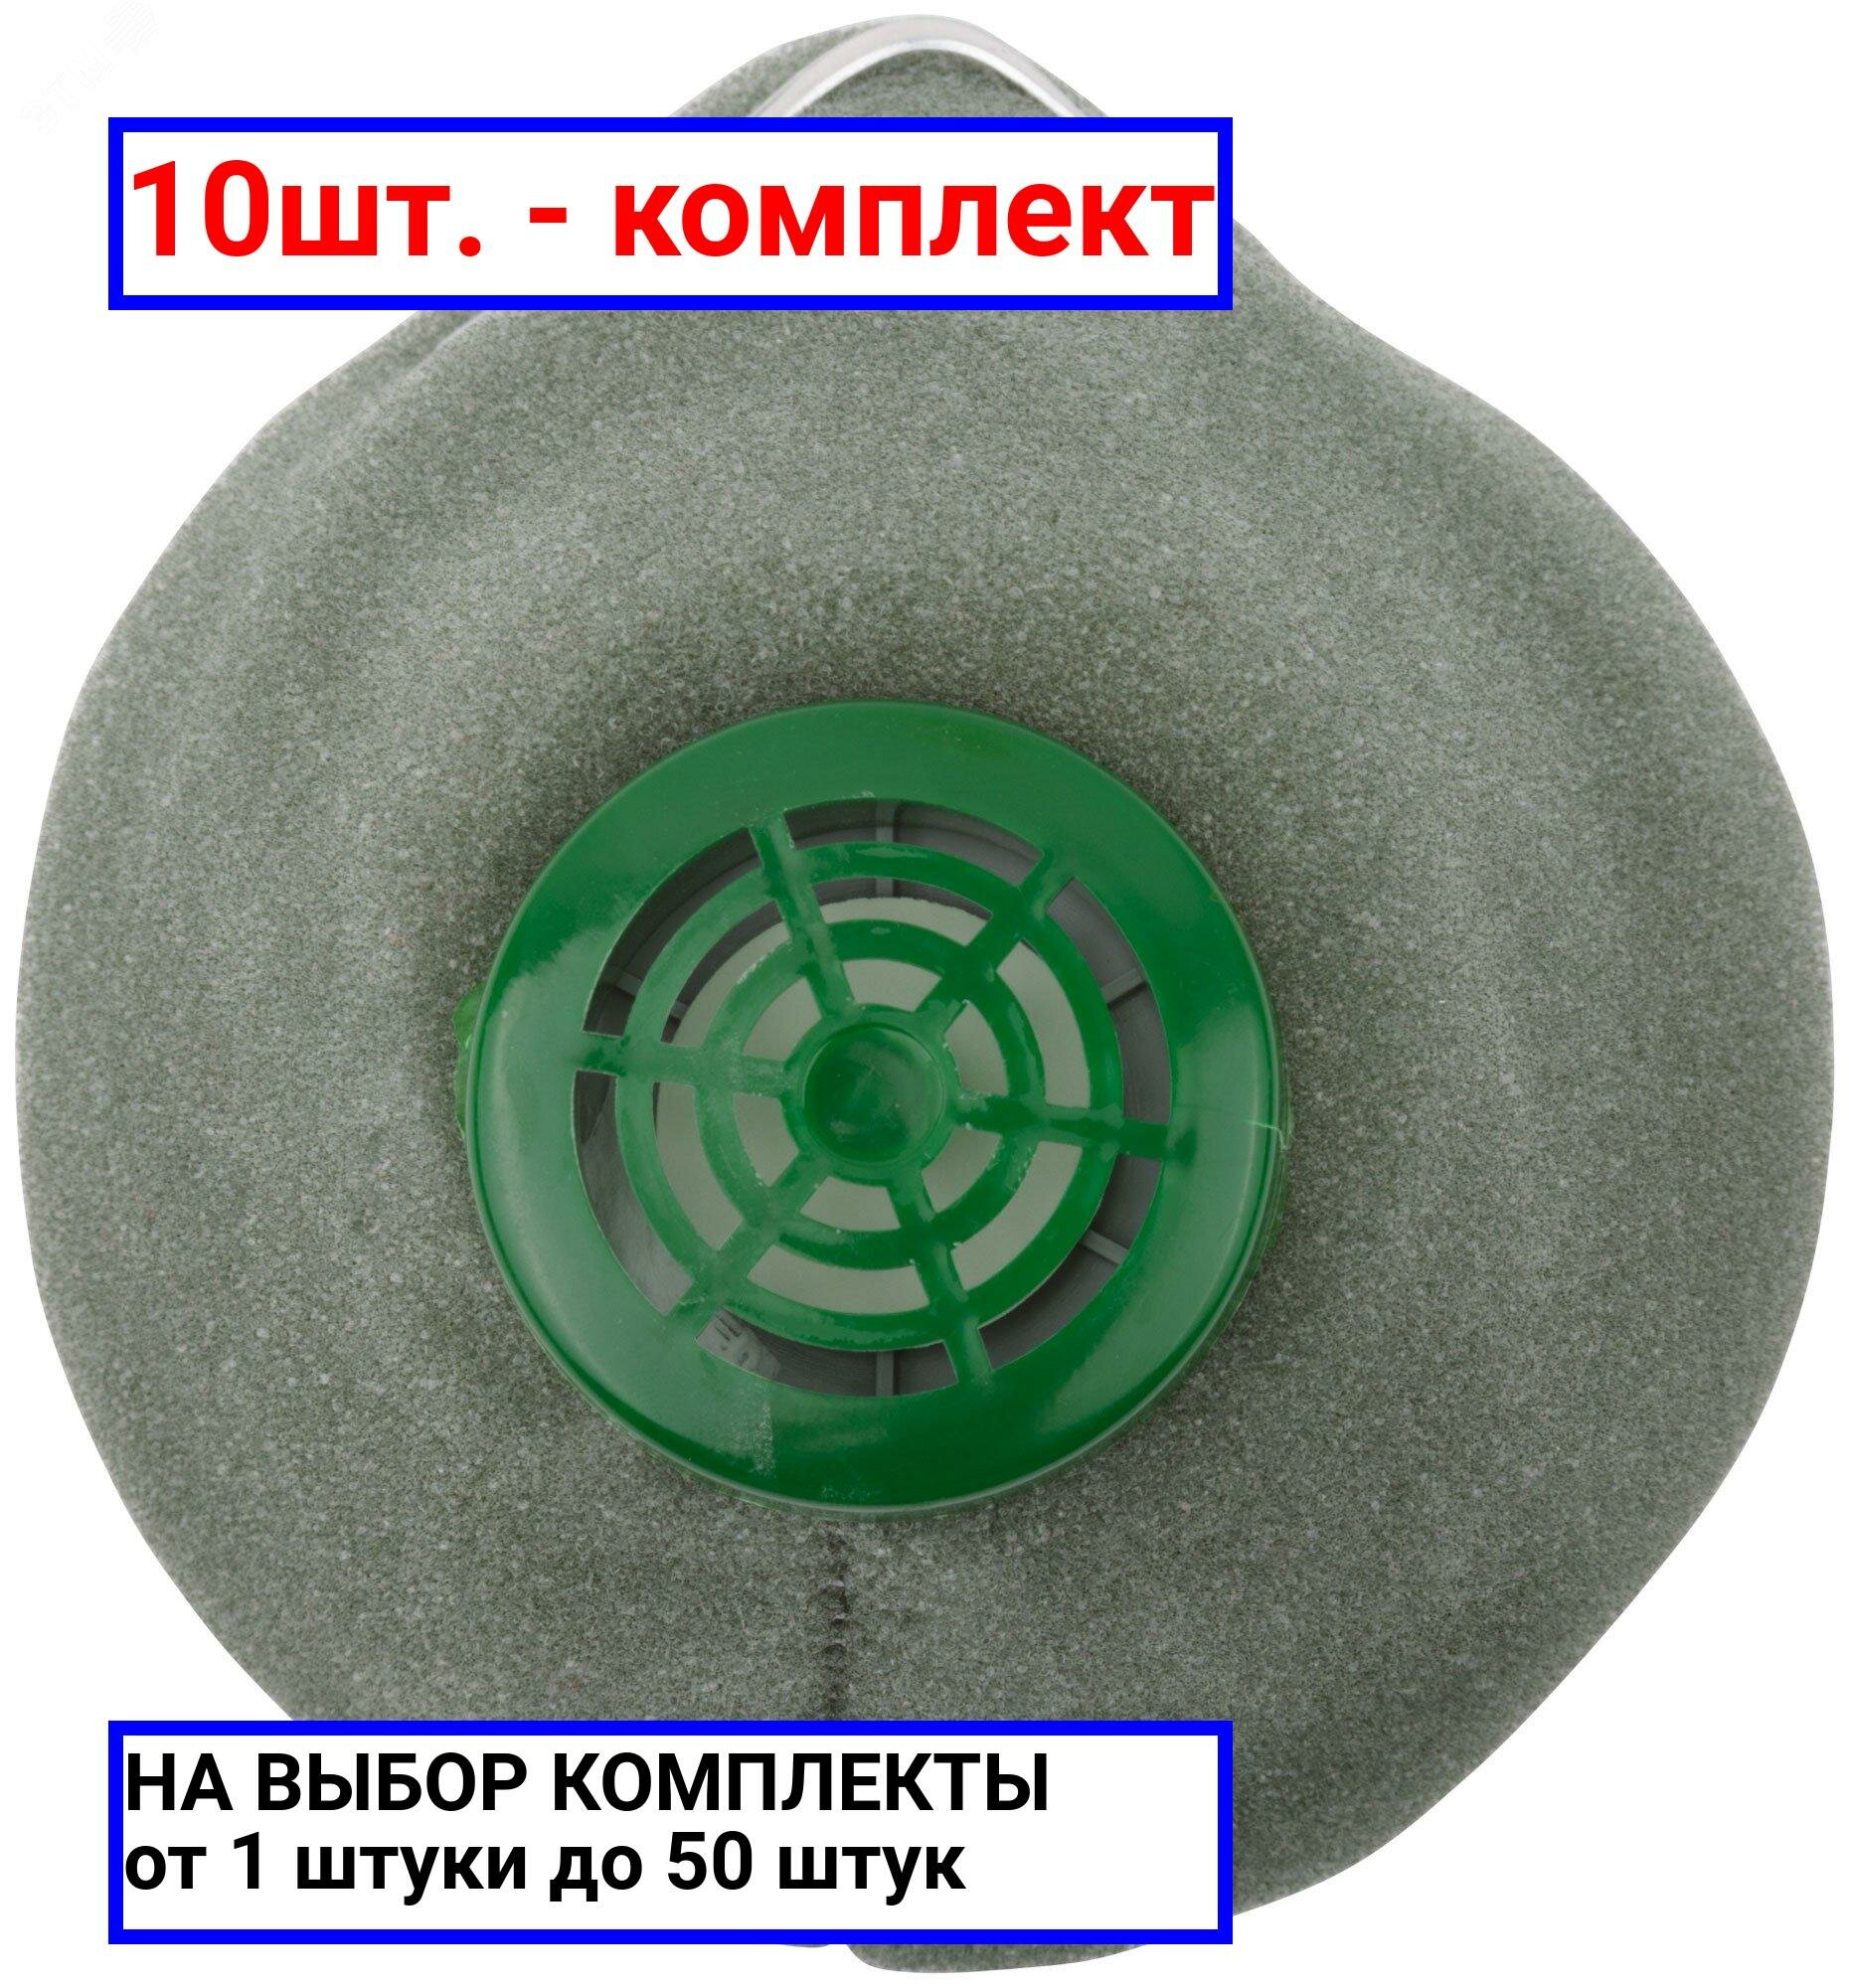 10шт. - Респиратор пылезащитный У-2К / РОС; арт. 12385; оригинал / - комплект 10шт